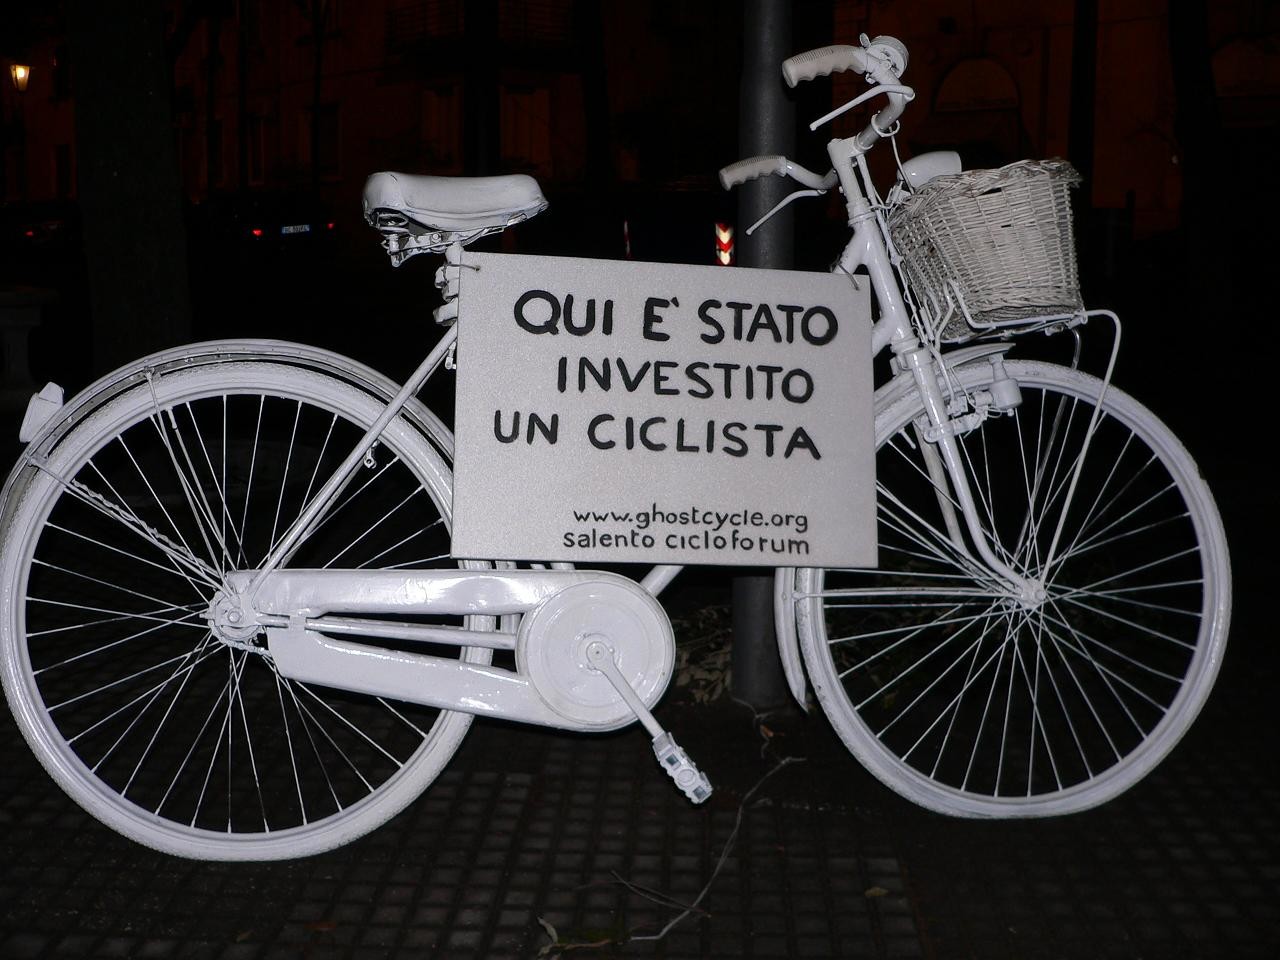 La Ghost Cycle comparsa a Lecce, recentemente rimossa dai Vigili urbani